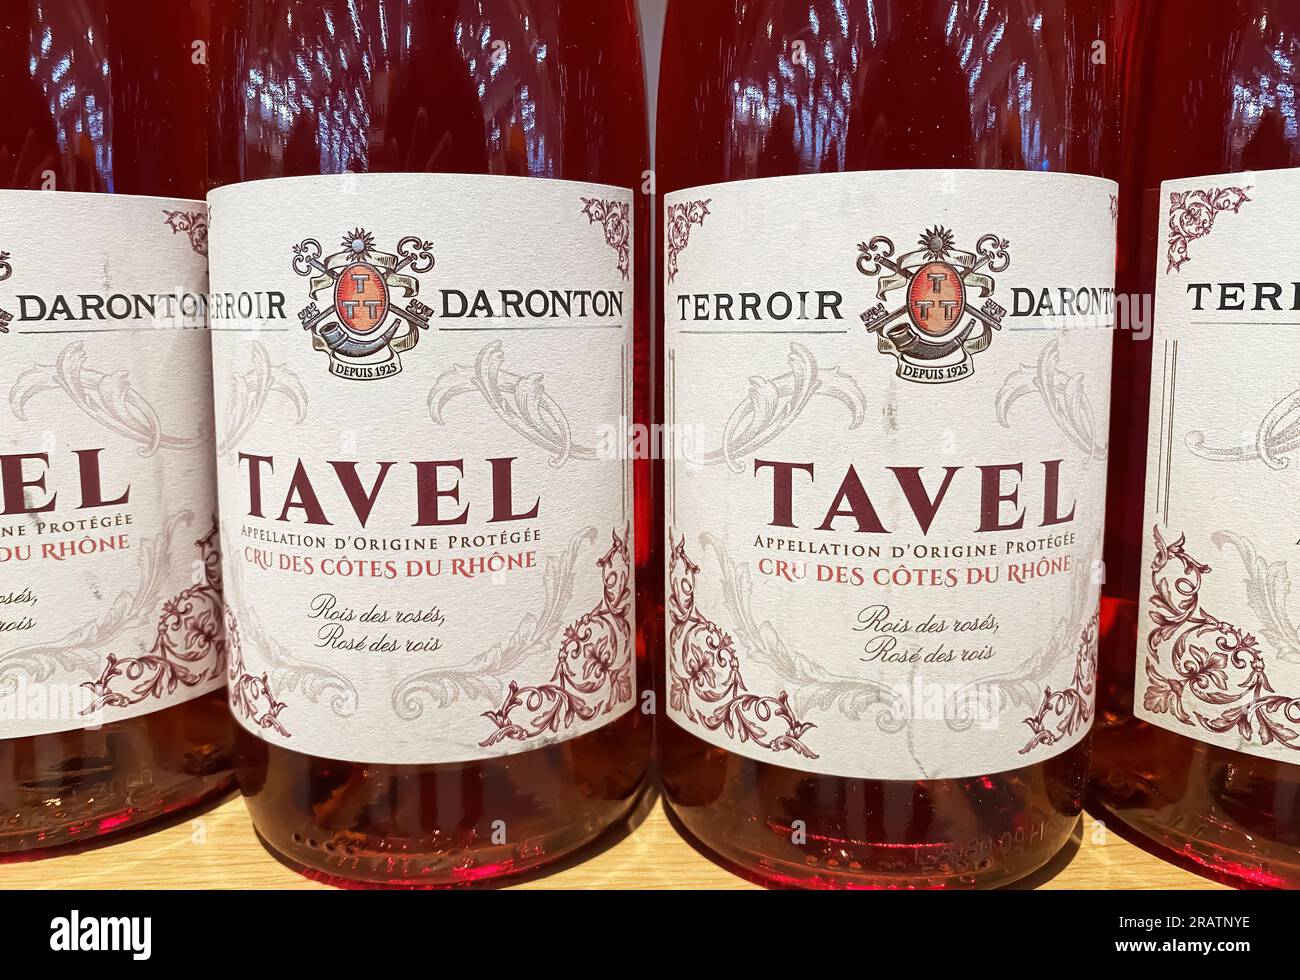 Viersen, Deutschland - Juli 4. 2023: Vervollständigung der Flaschen Tavel Terroir Daronton französischer Rosenwein im Regal des deutschen Supermarkts Stockfoto